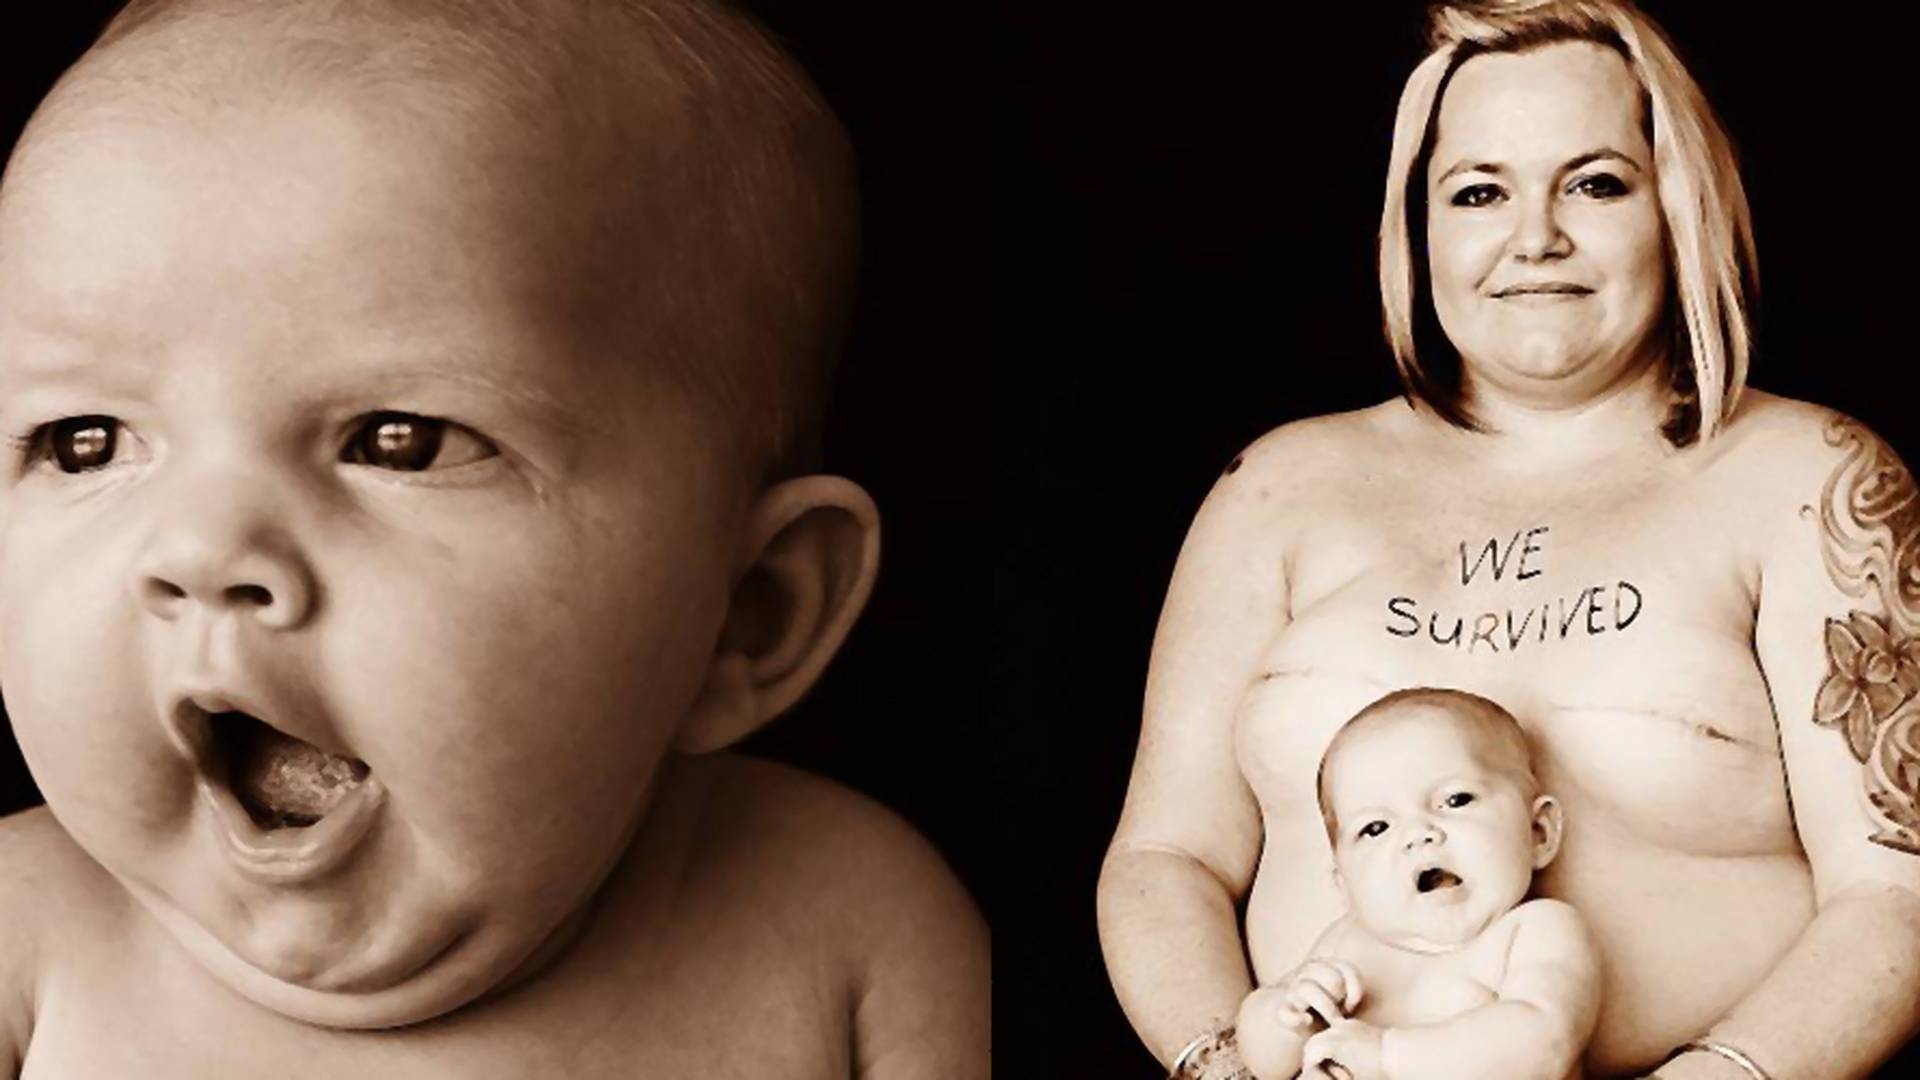 Pokonała raka będąc w ciąży - dziś inspiruje inne mamy, pokazując swoją siłę